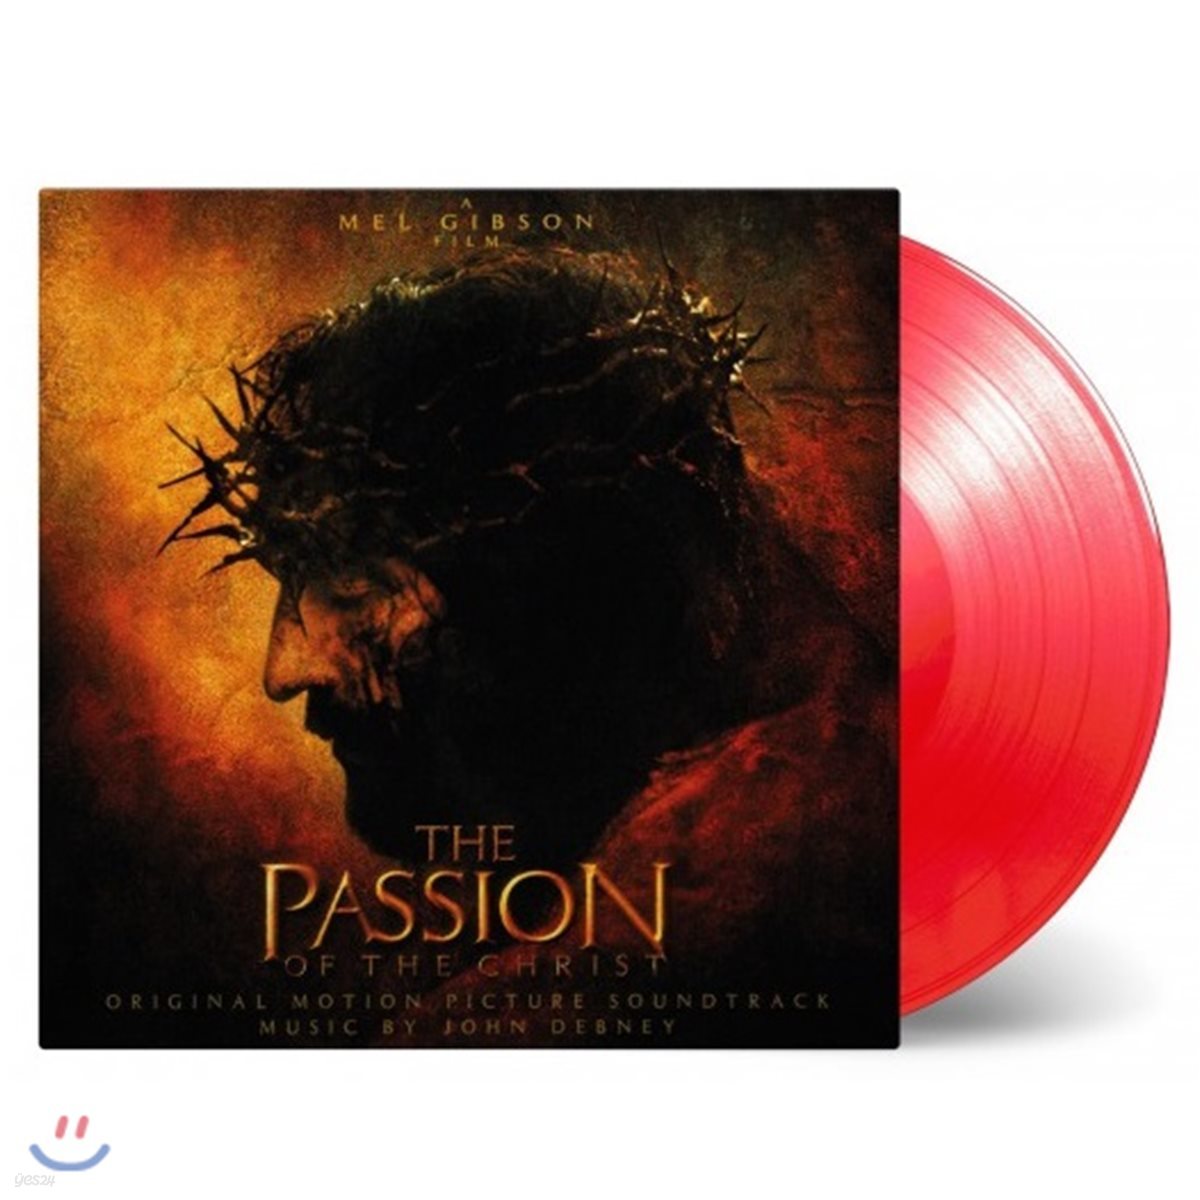 패션 오브 크라이스트 영화음악 (The Passion Of The Christ Original Soundtrack by John Debney 존 데브니) [투명 레드 컬러 LP]